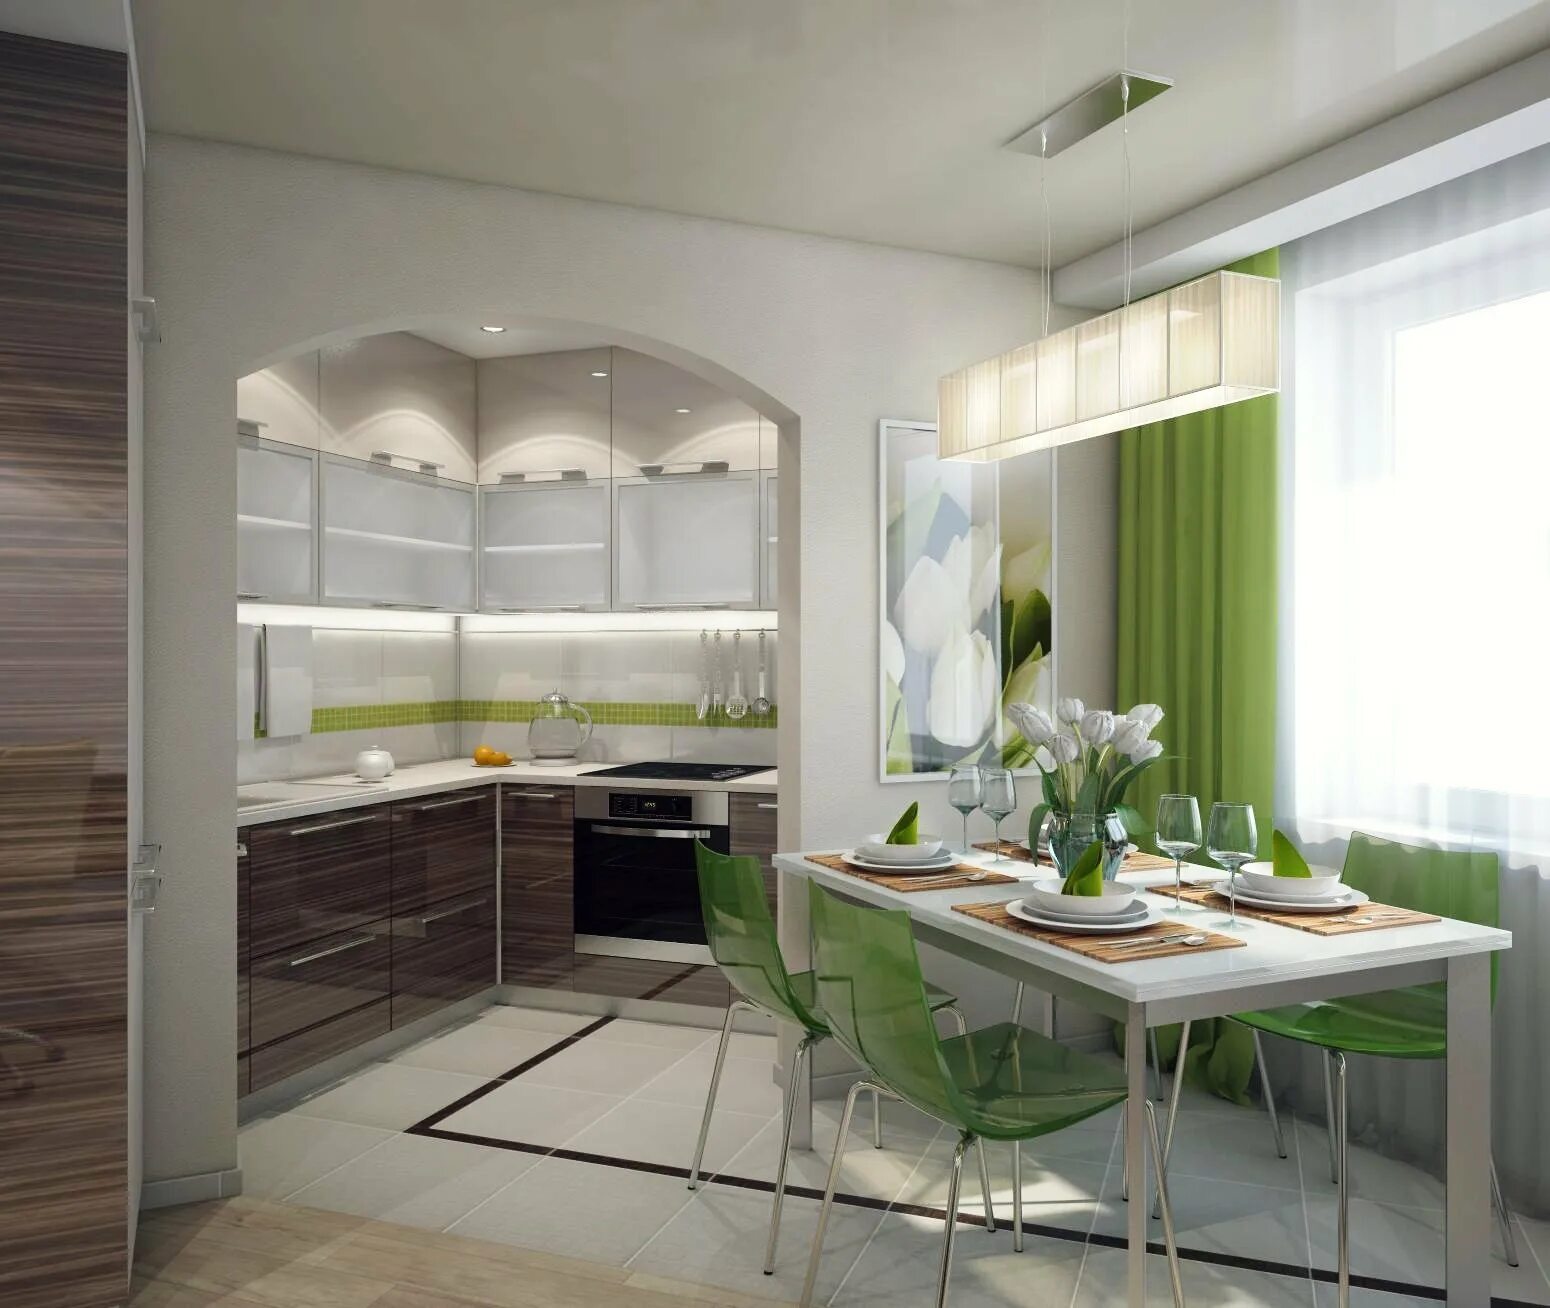 Кухня 4 столовая. Кухня с зелеными акцентами. Красивые кухни в квартирах. Кухня столовая. Зеленые акценты в интерьере кухни.